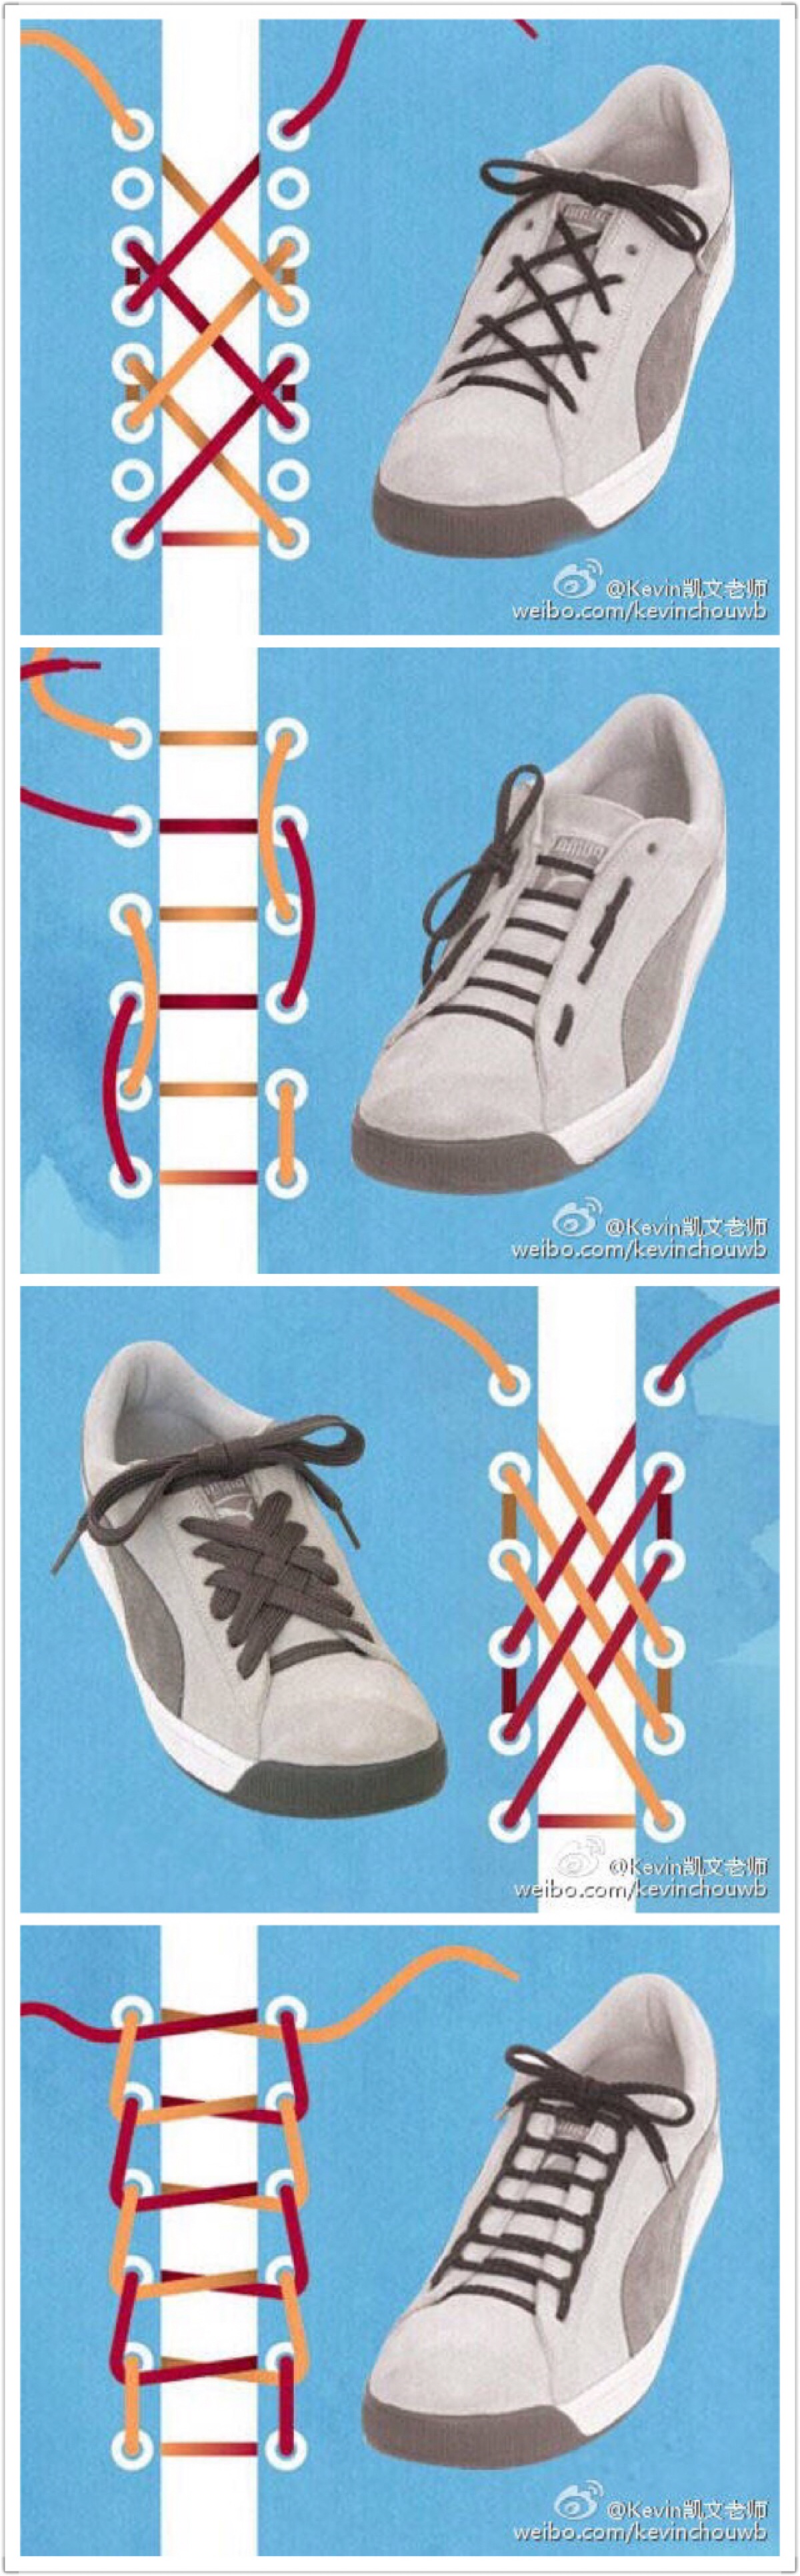 鞋带的多种系法